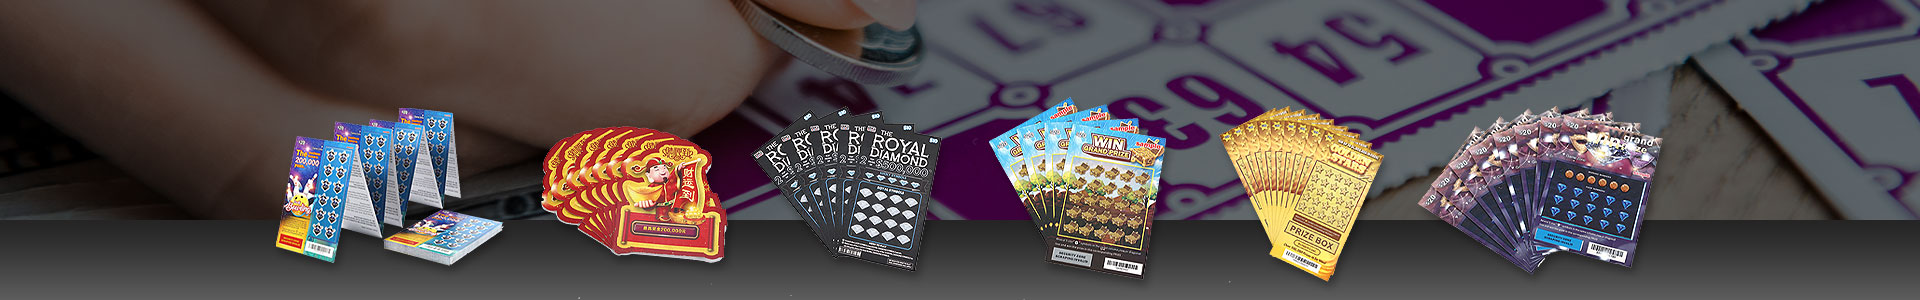 Rubbellose | Lottoscheine | Pull Tab Ticket | Karten versiegeln